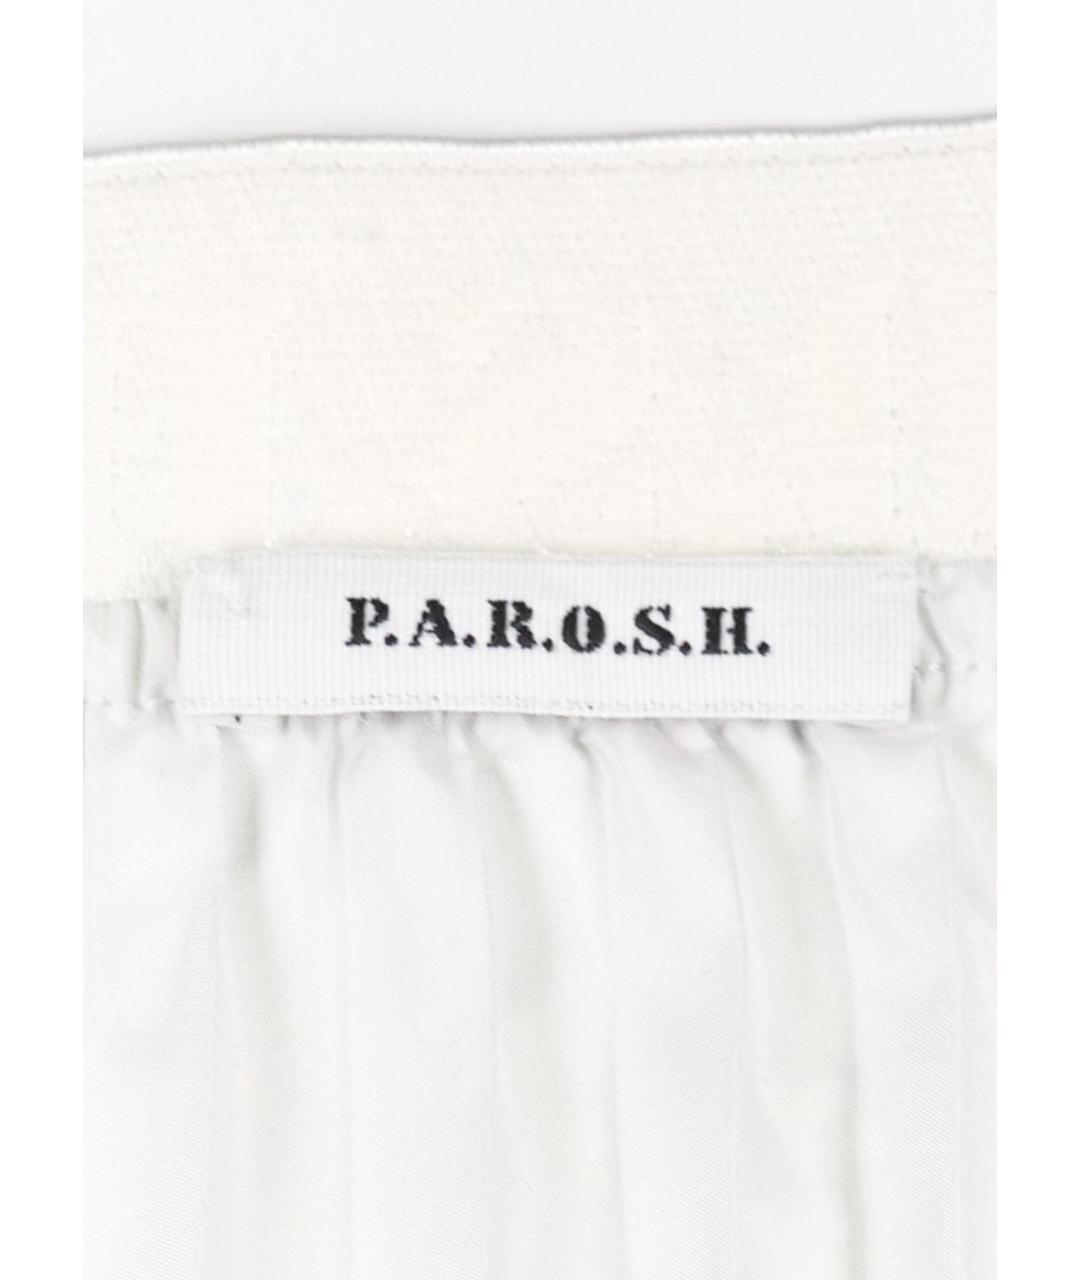 P.A.R.O.S.H. Голубая полиэстеровая юбка миди, фото 3